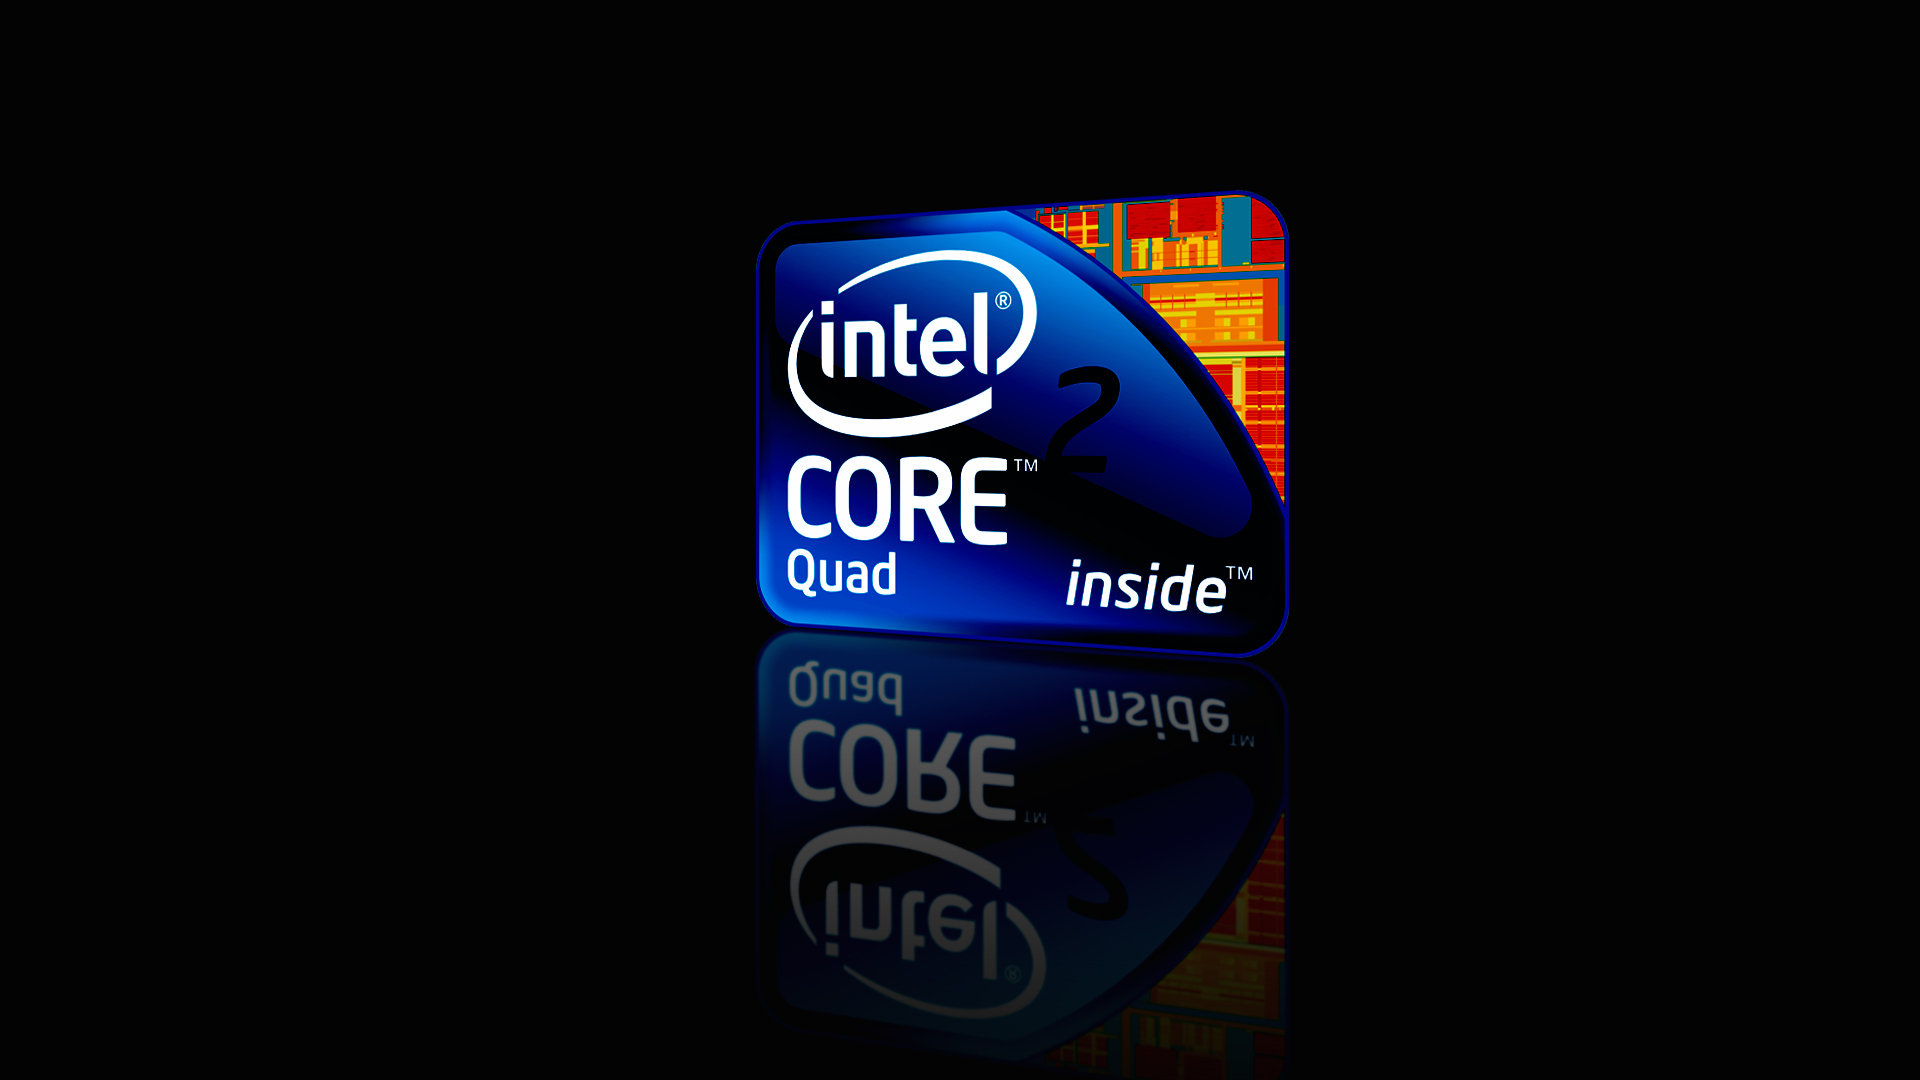 Intel Core I7 Wallpaper